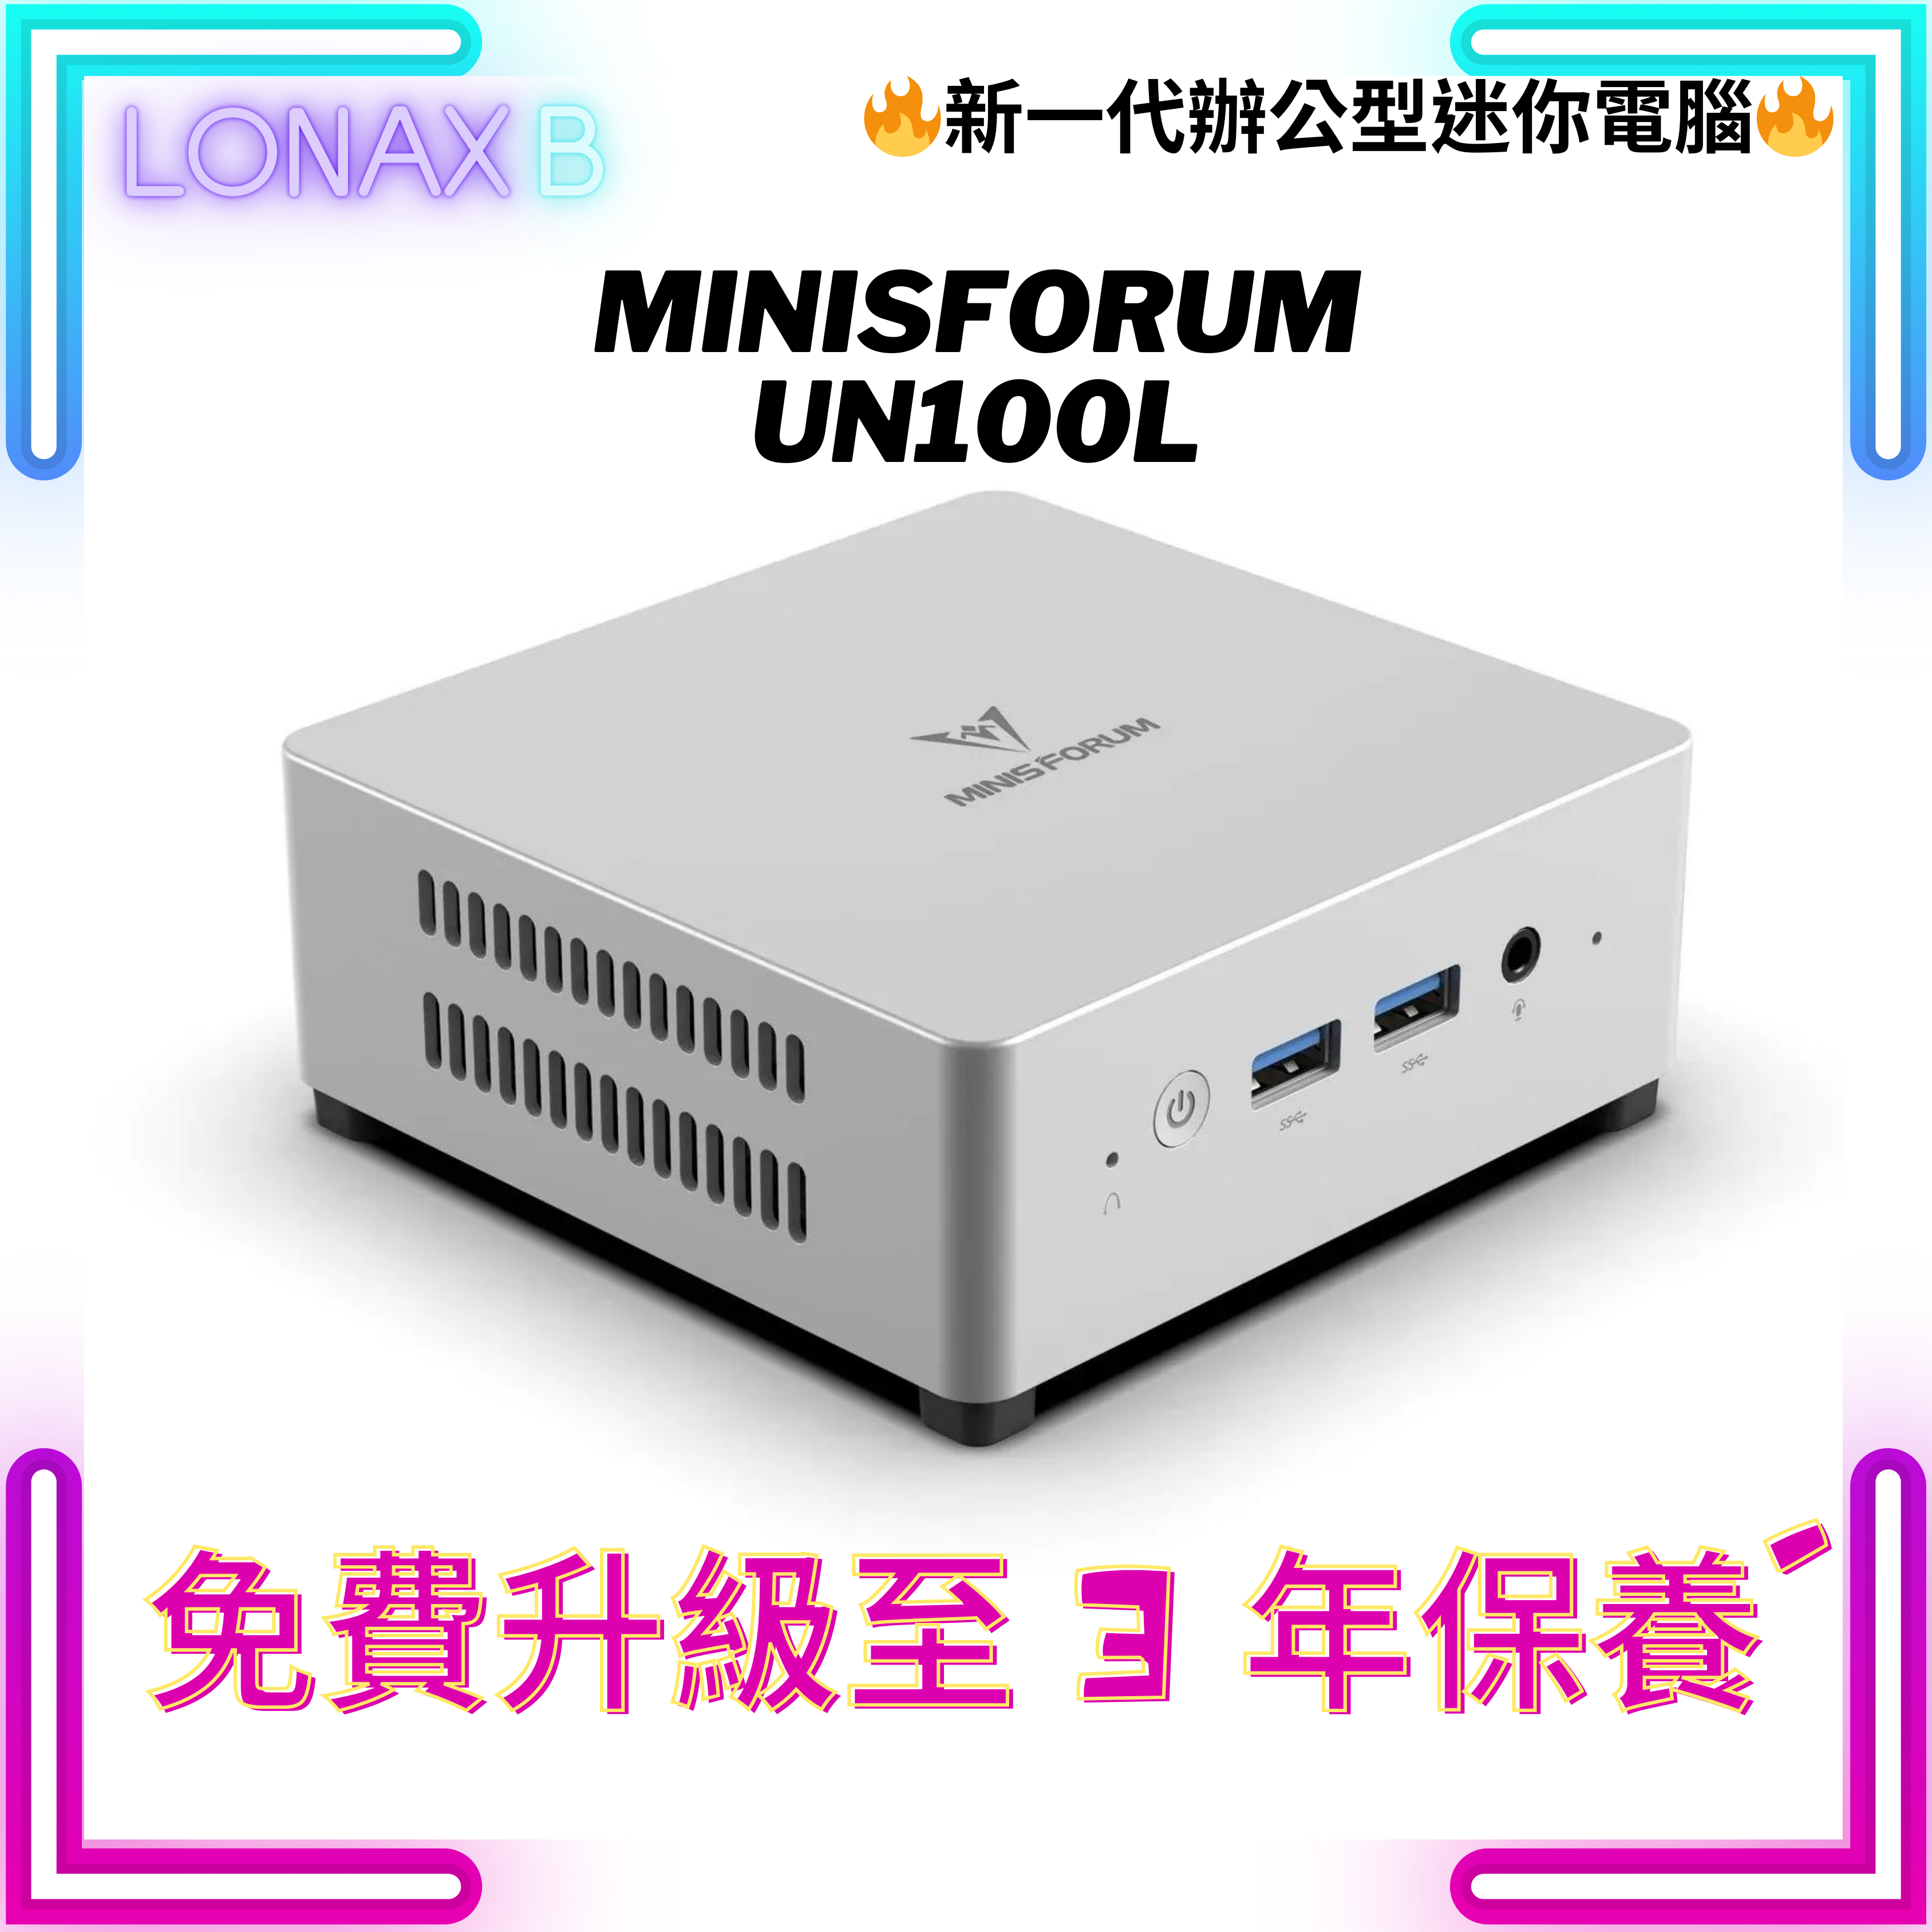 Minisforum CS-MFUN100 UN100L Mini PC (Intel Processor N100 / 16GB Ram / 512GB SSD / Windows 11 Home) free upgrade to 3-year warranty 